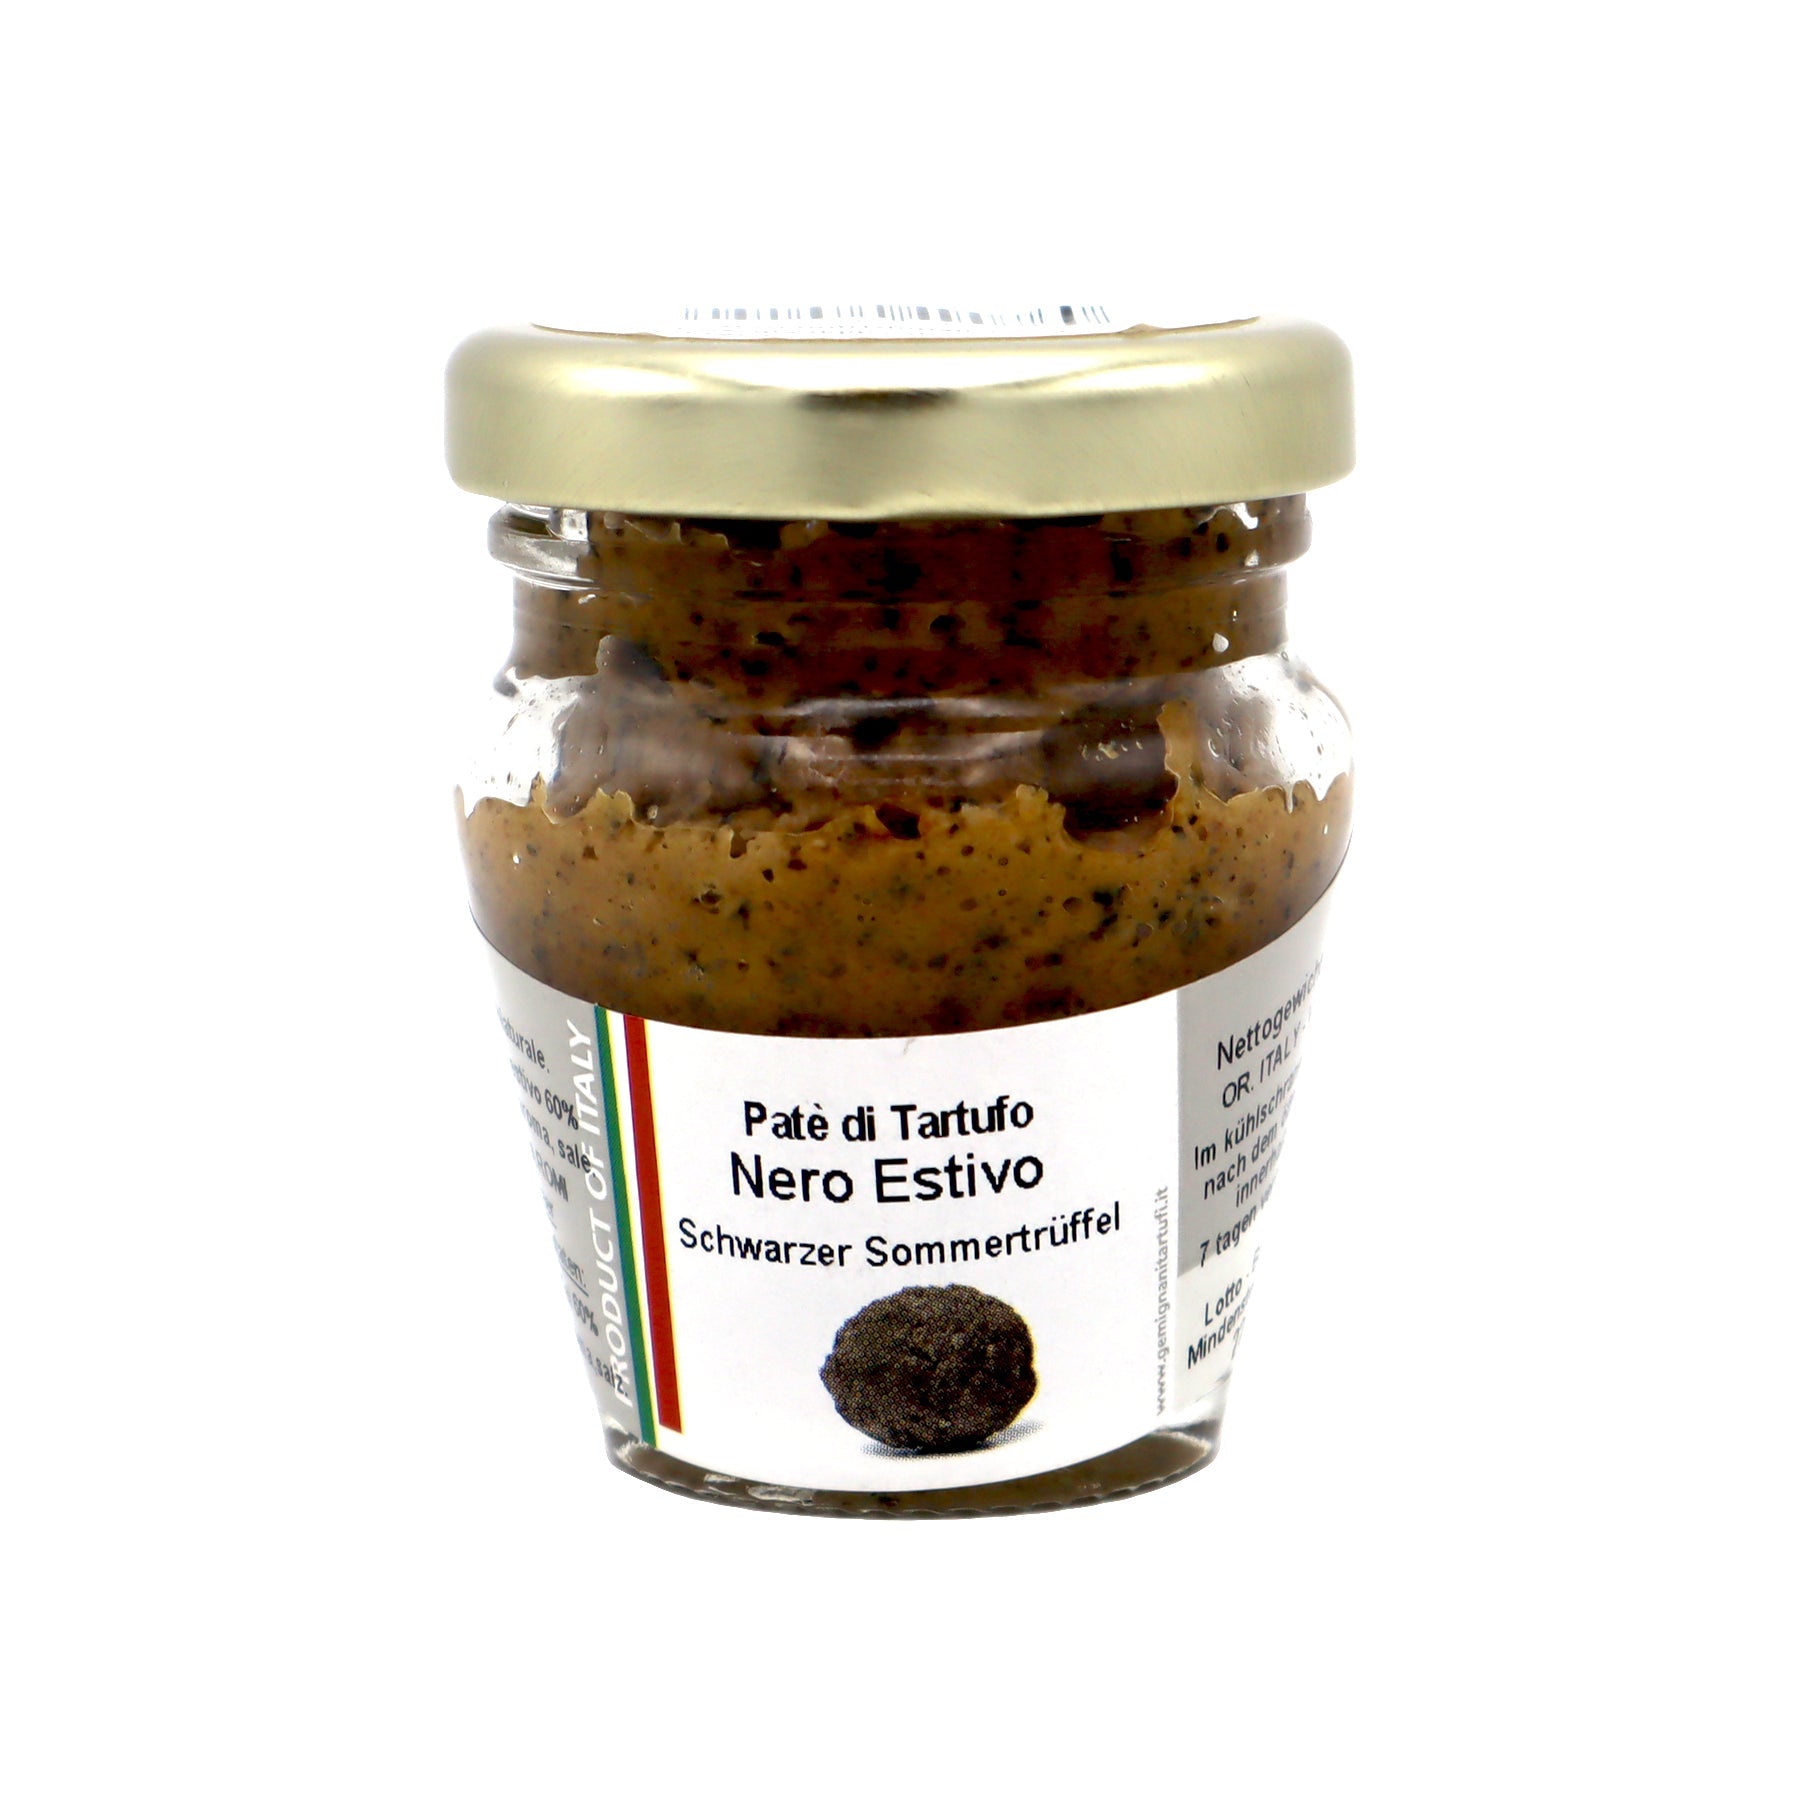 Patè di Tartufo - Trüffel-Pastete von schwarzen Sommer-Trüffeln (70% Trüffel) - Genussbote